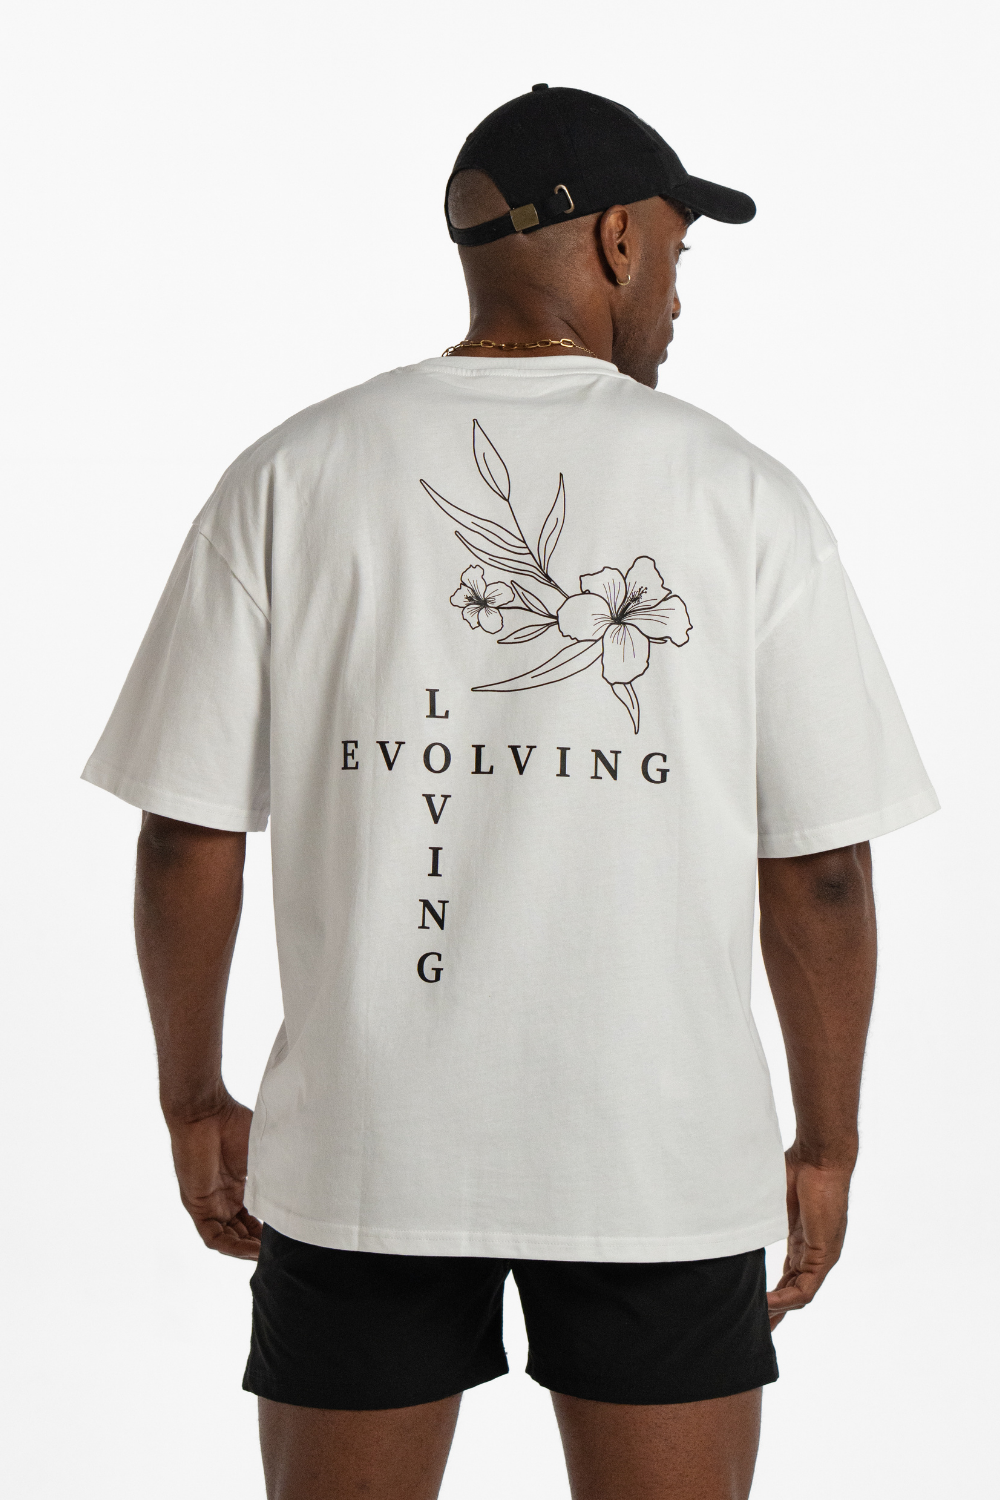 Evolving & Loving Crisp White T-shirt